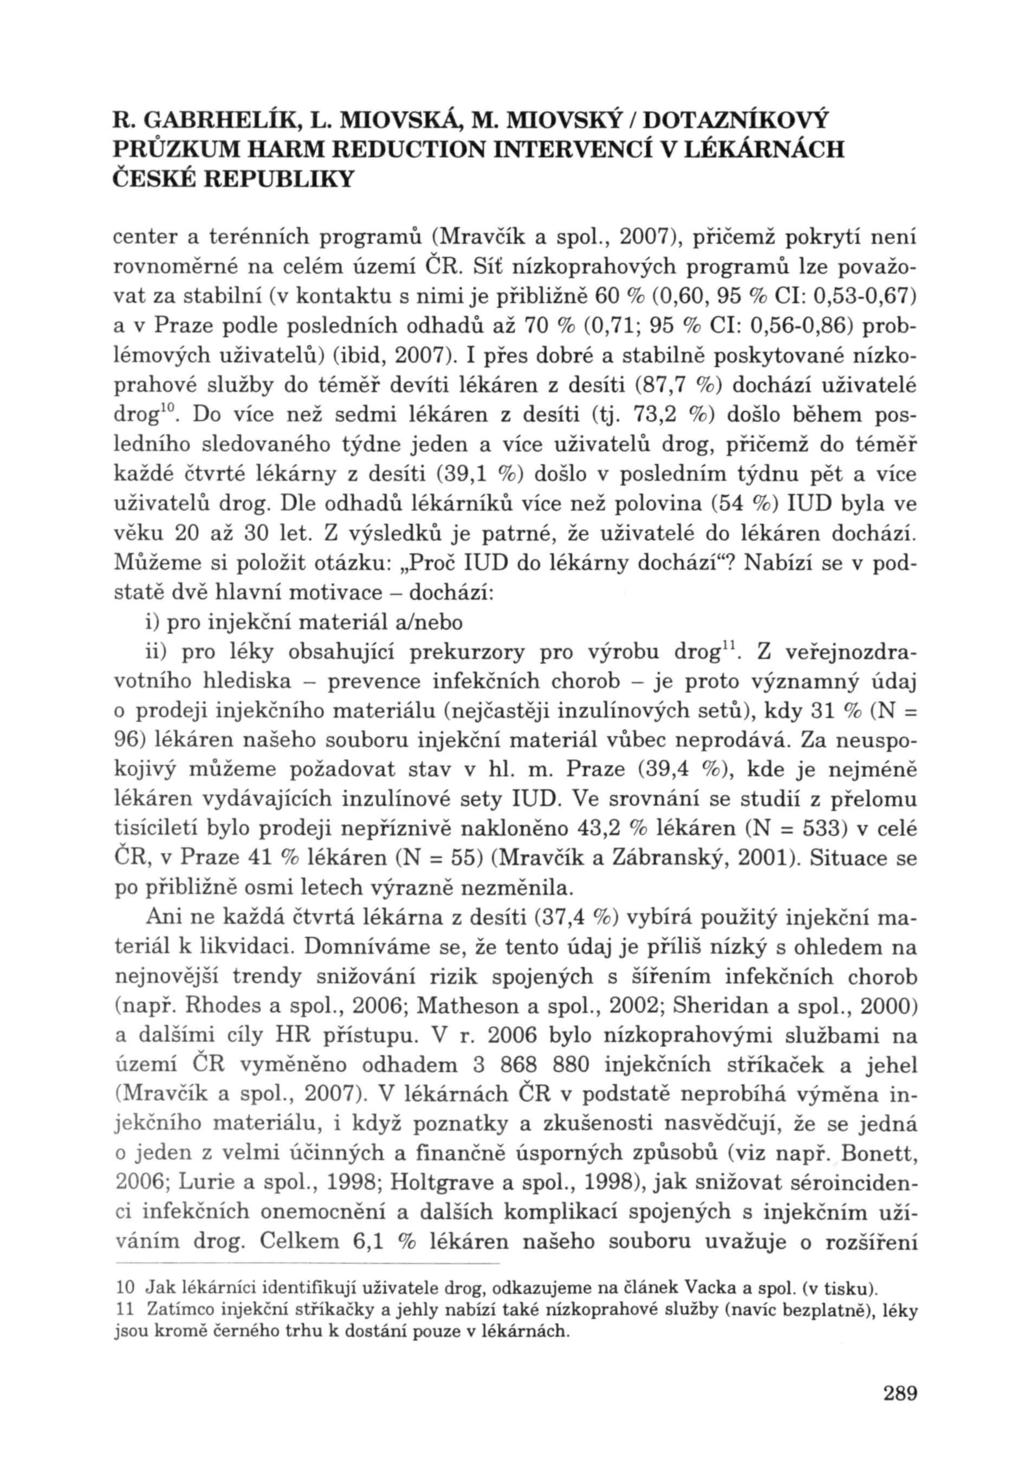 R. GABRHELÍK, L. MlOvsKÁ, M. MIOvsKÝ / DOTAZNÍKOVÝ center a terénních programů (Mravčík a spol., 2007), přičemž pokrytí není rovnoměrné na celém území ČR.